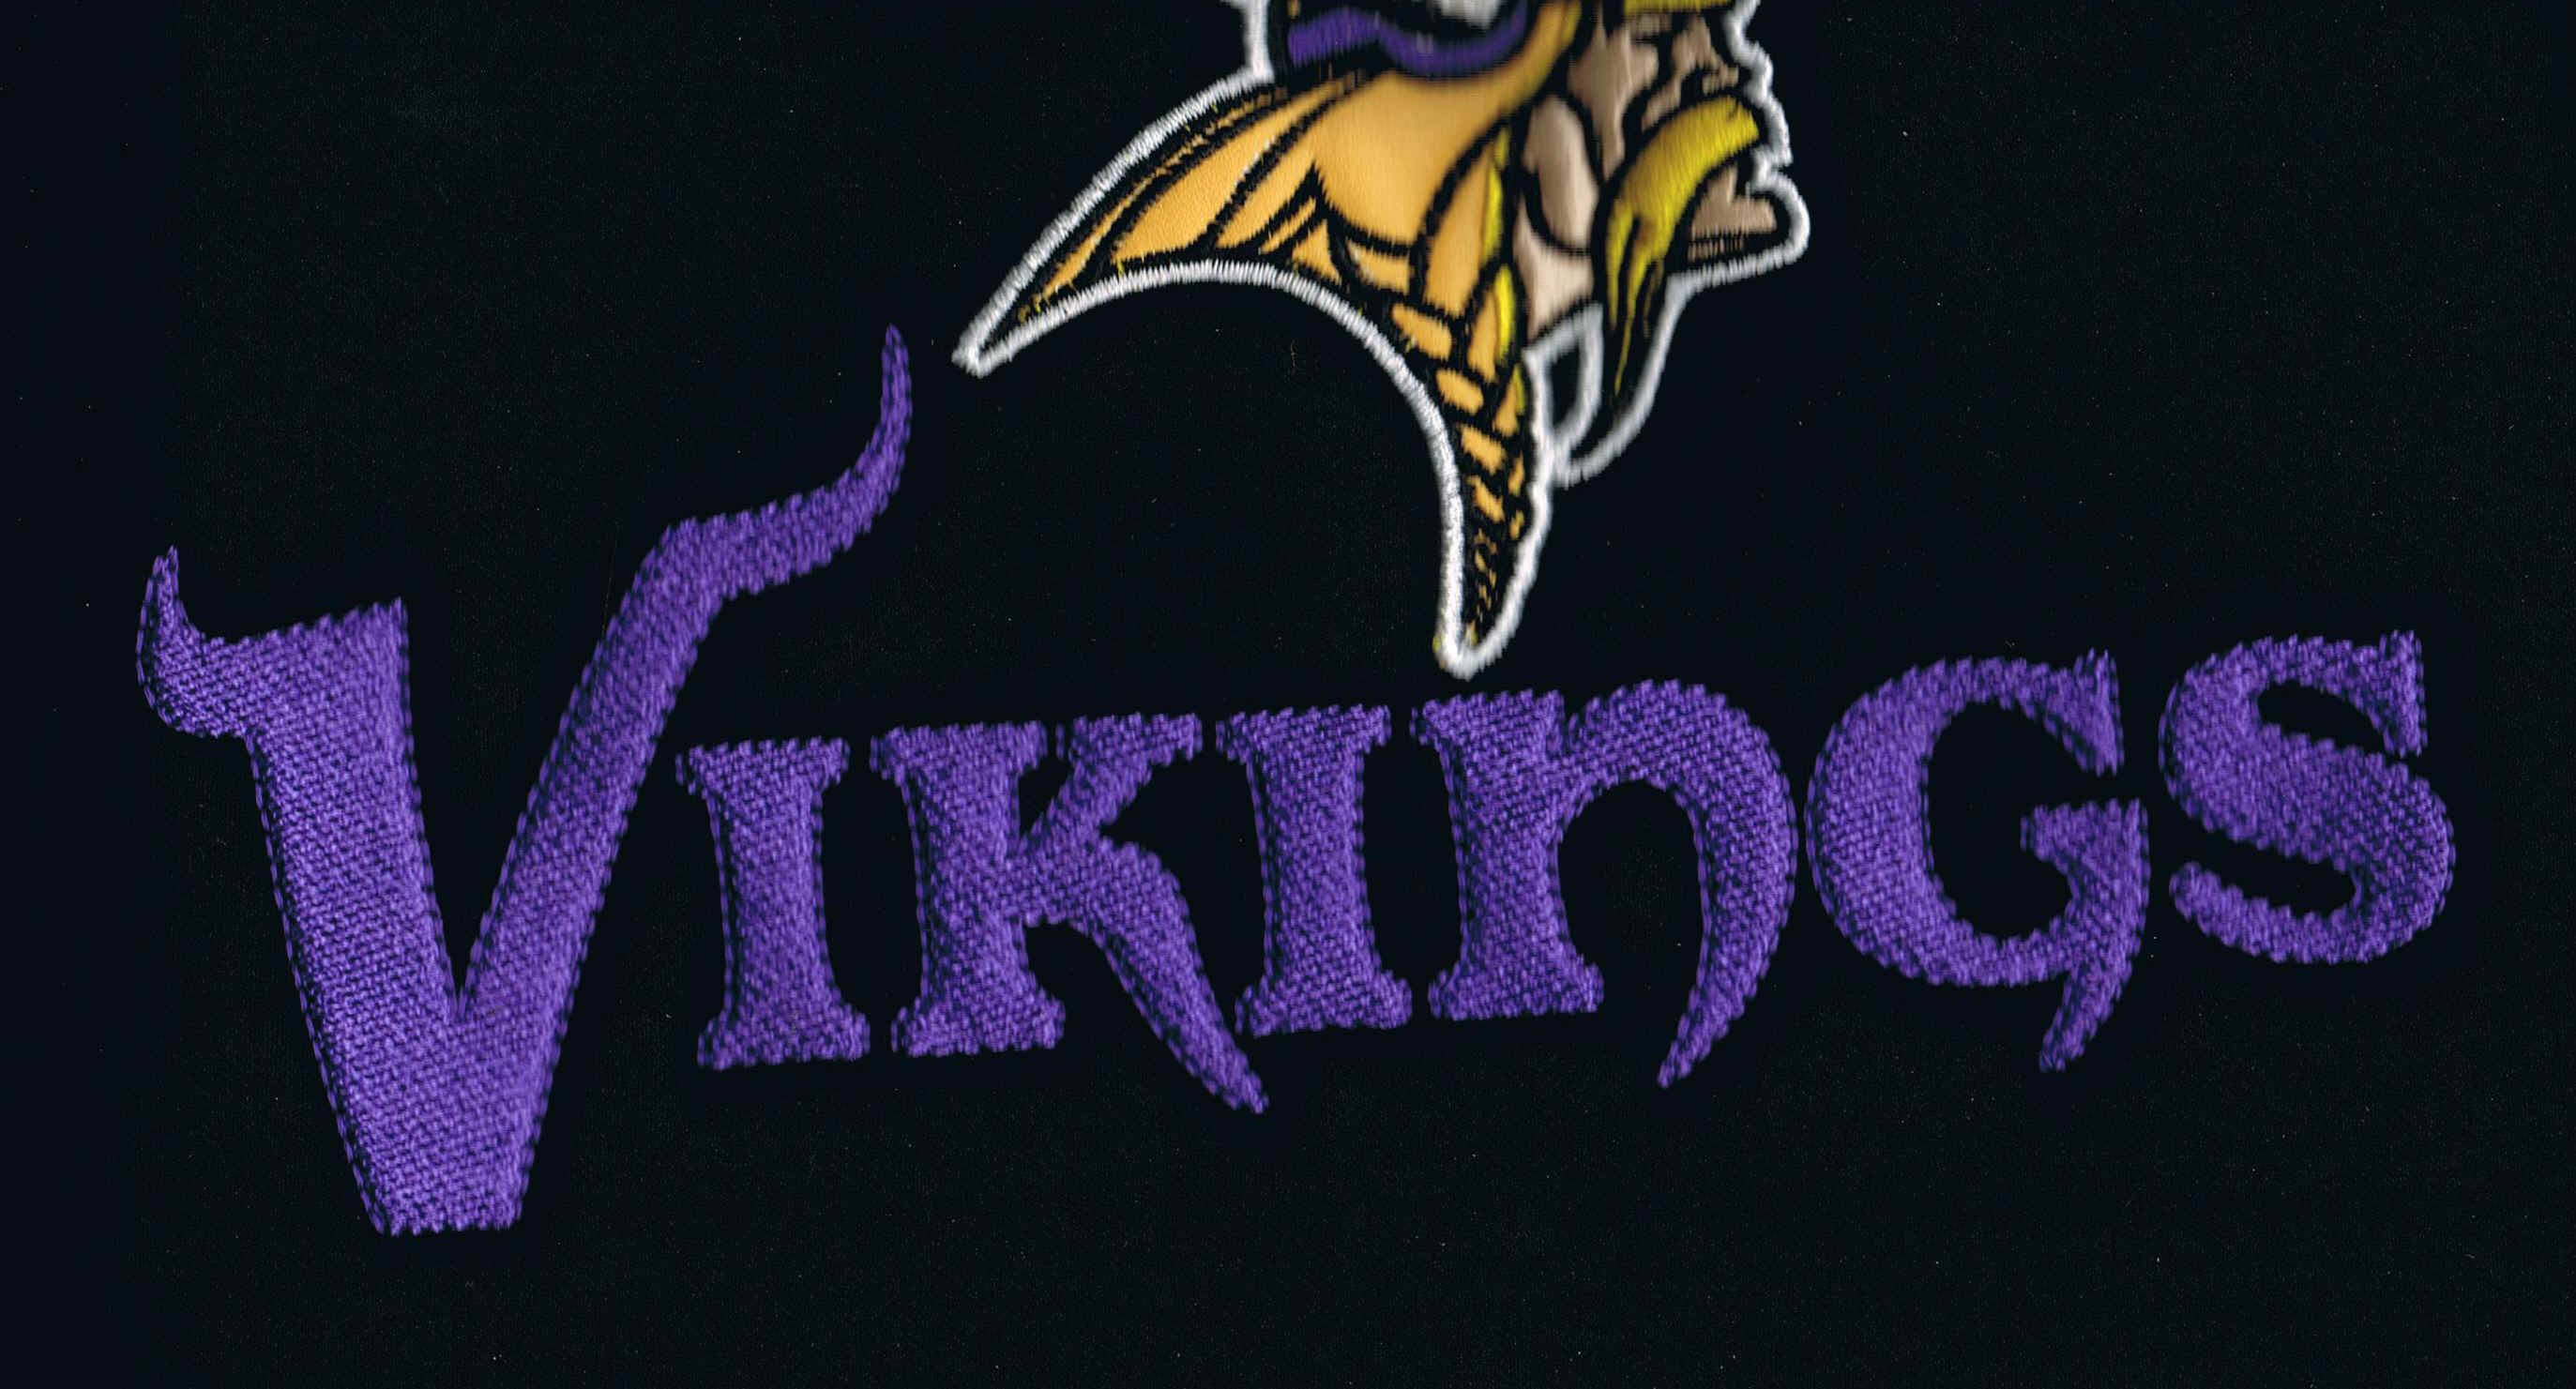 2746x1481 Minnesota Vikings wallpaper icon free.